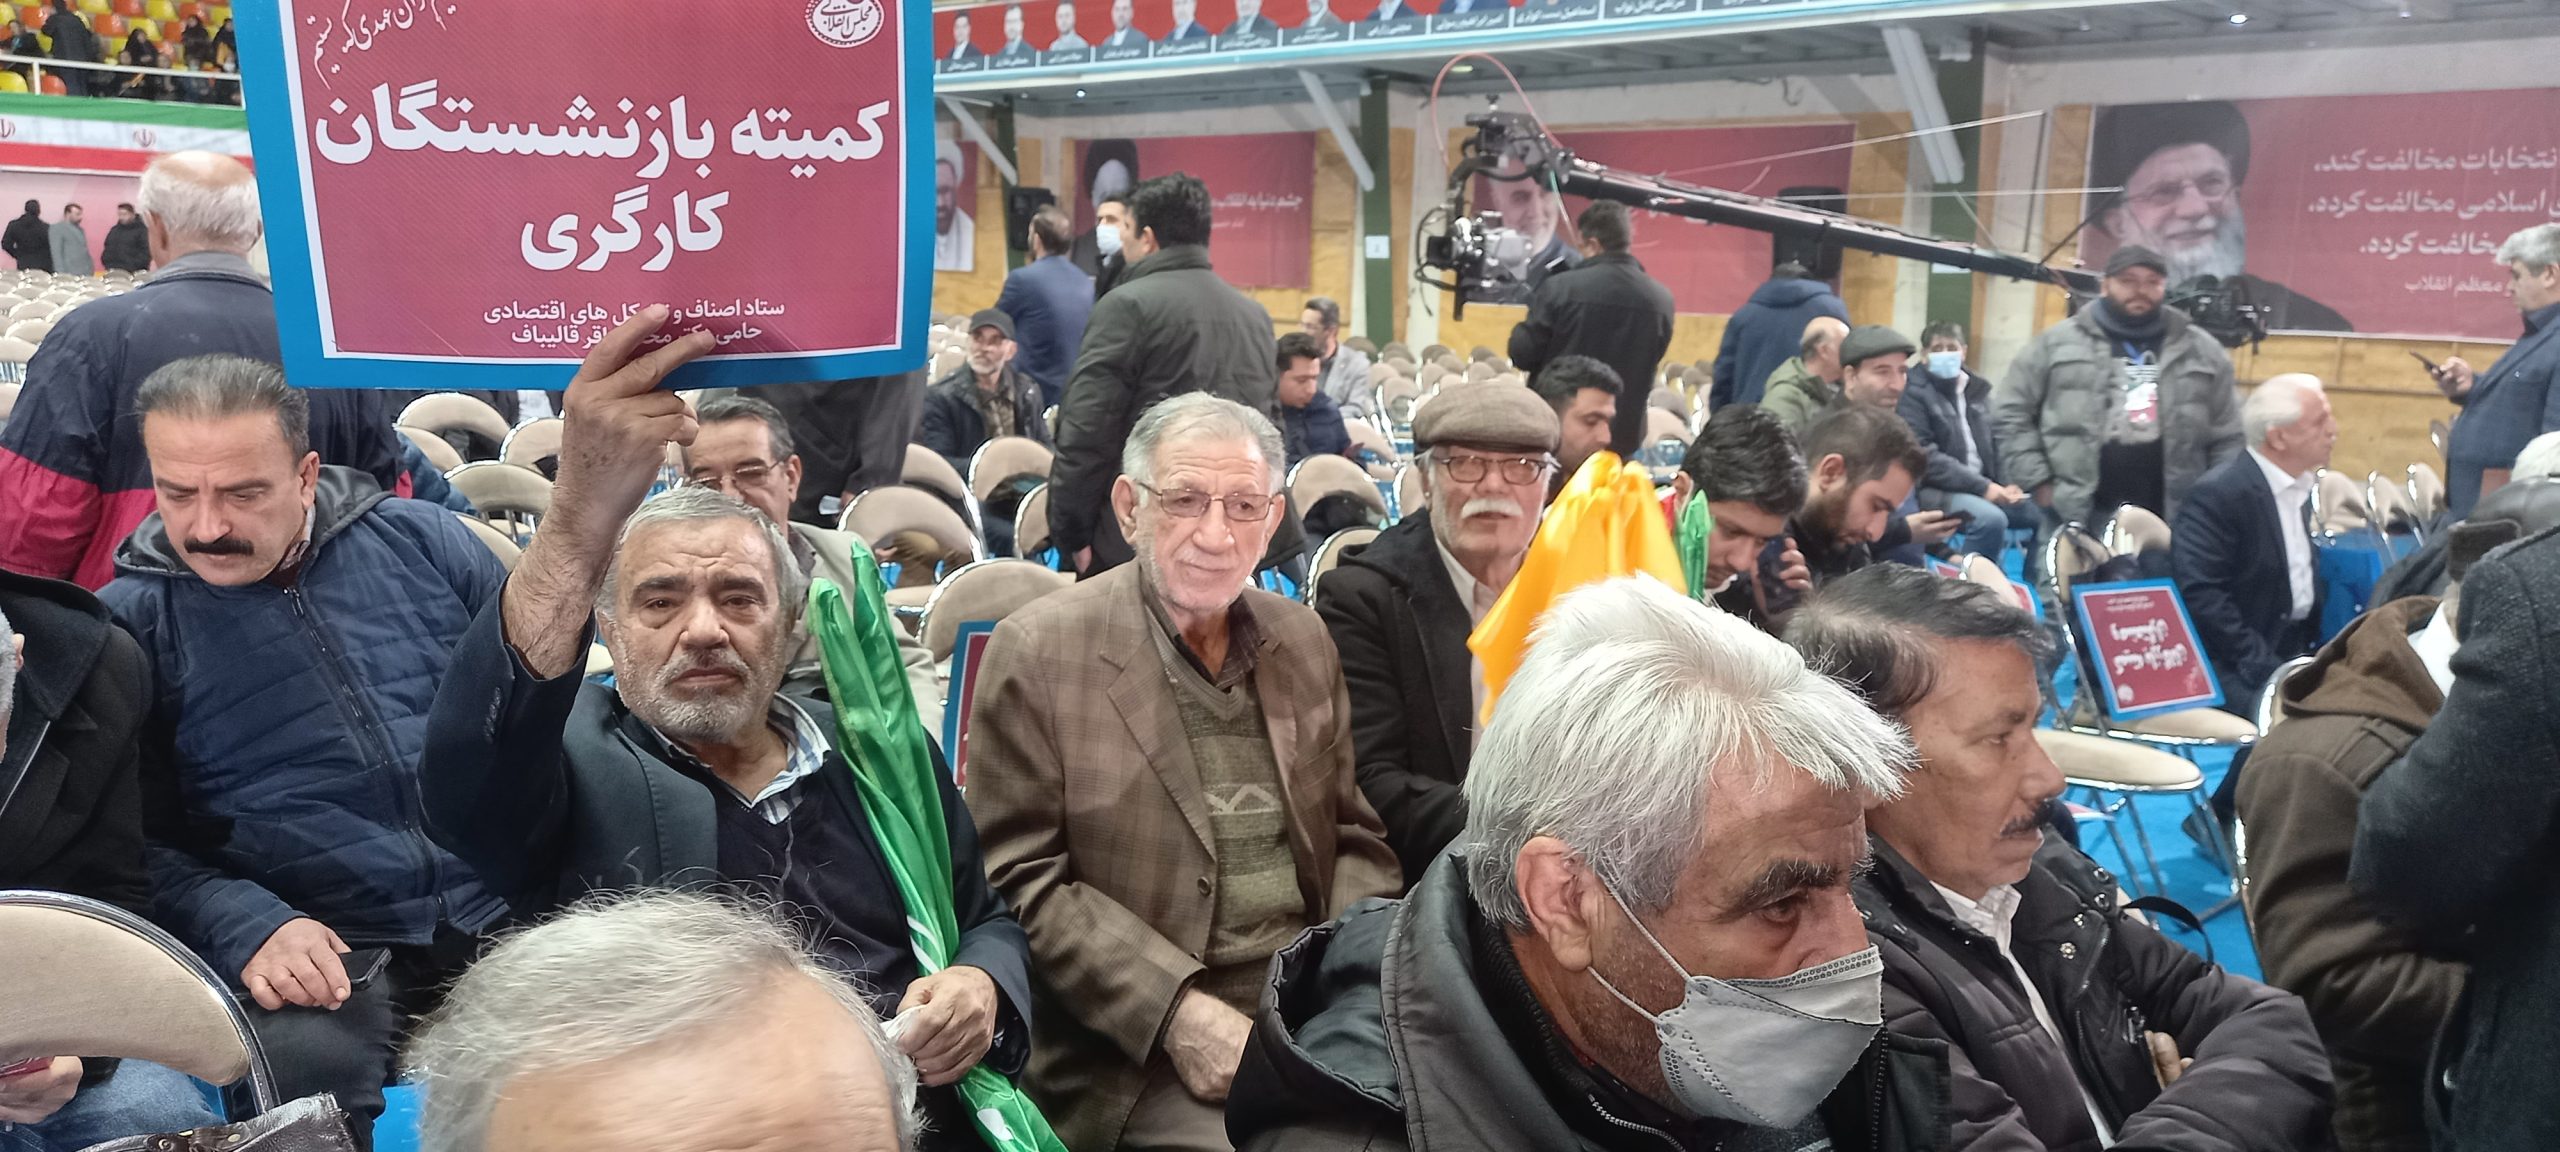 حضور پرتعداد و فعال کمیته بازنشستگان تامین اجتماعی در همایش انتخاباتی محمد باقر قالیباف